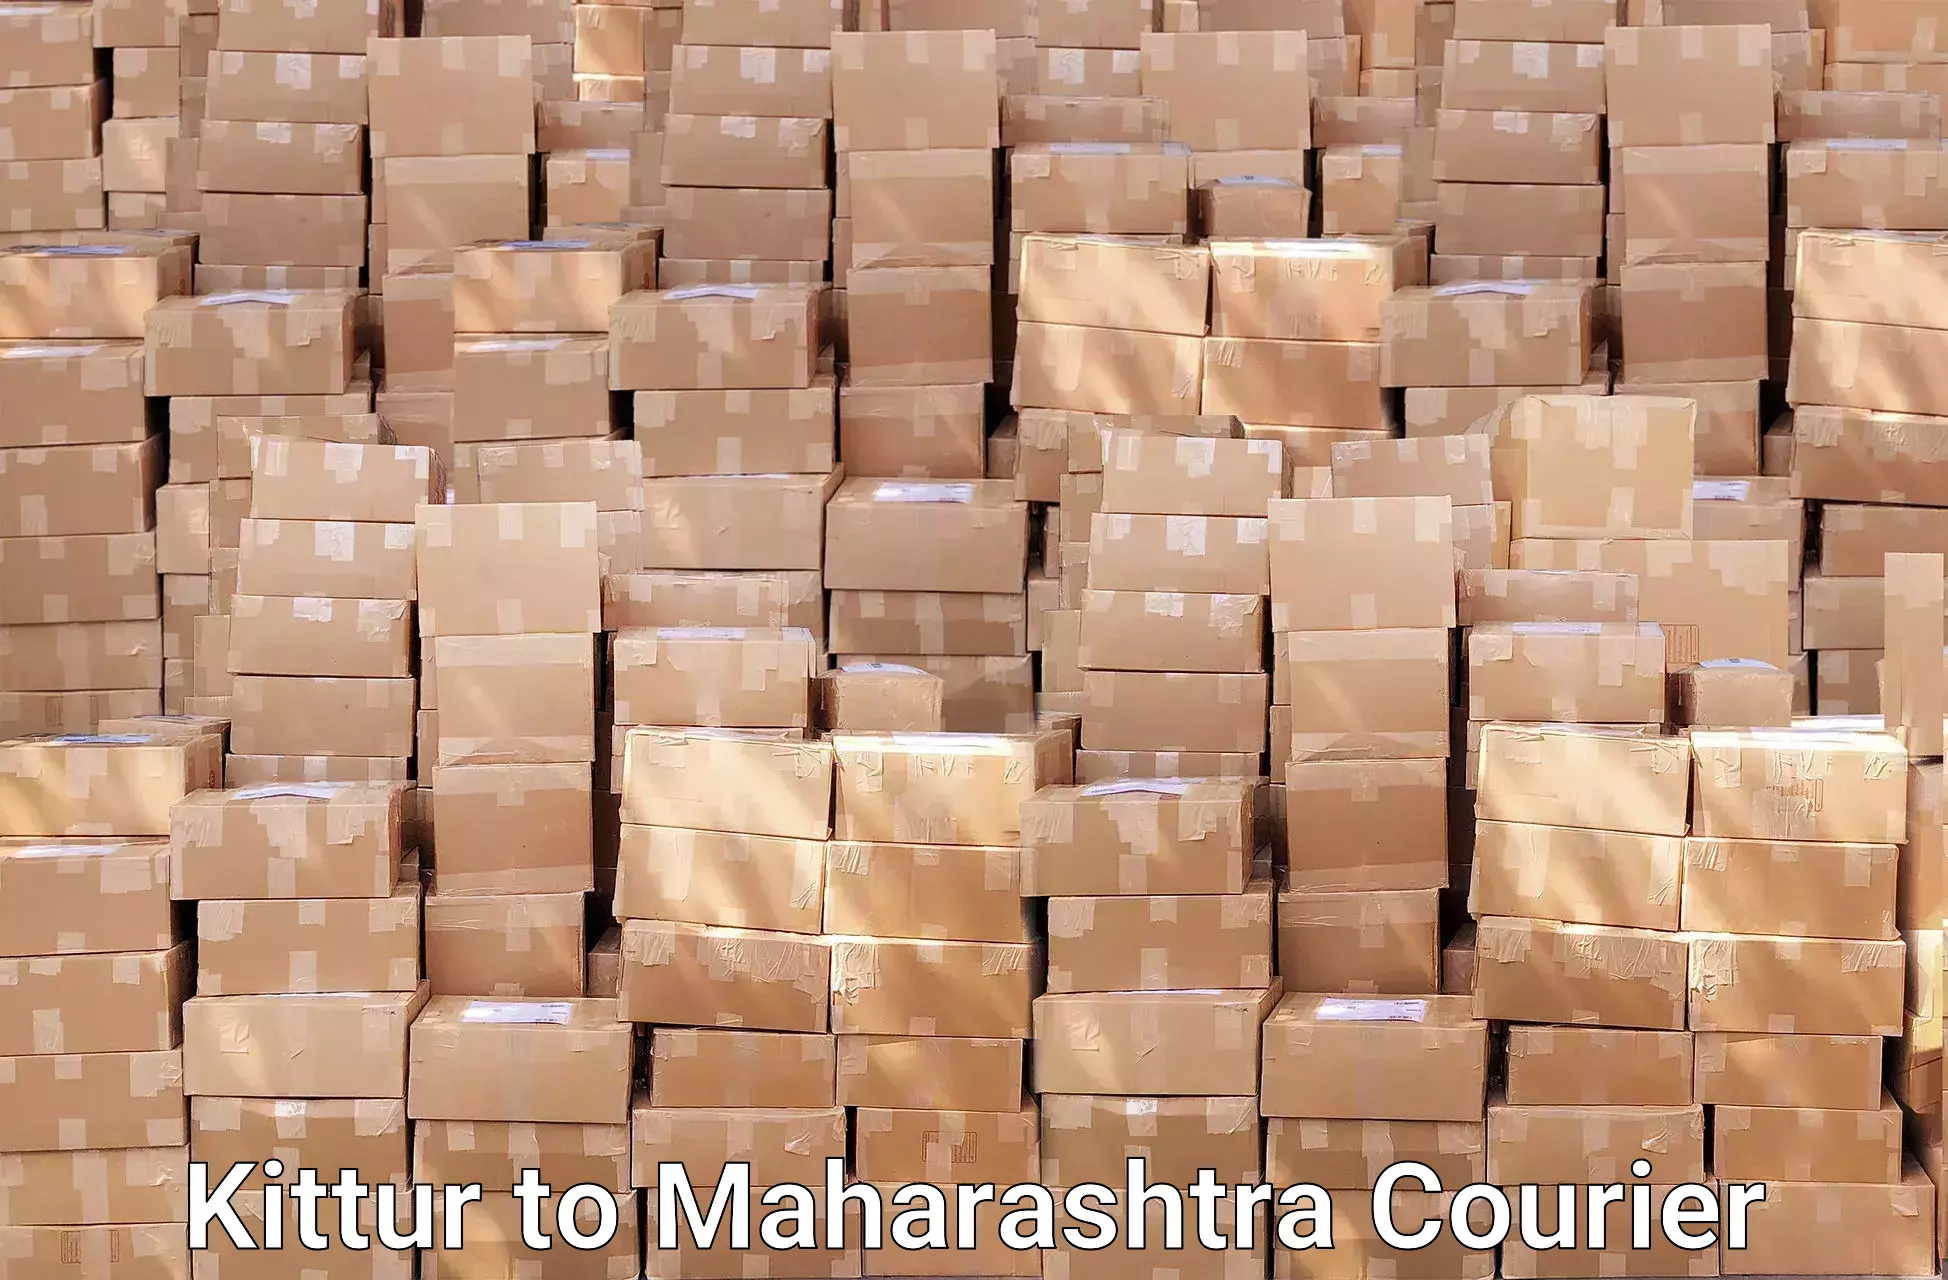 Furniture moving service Kittur to Maharashtra